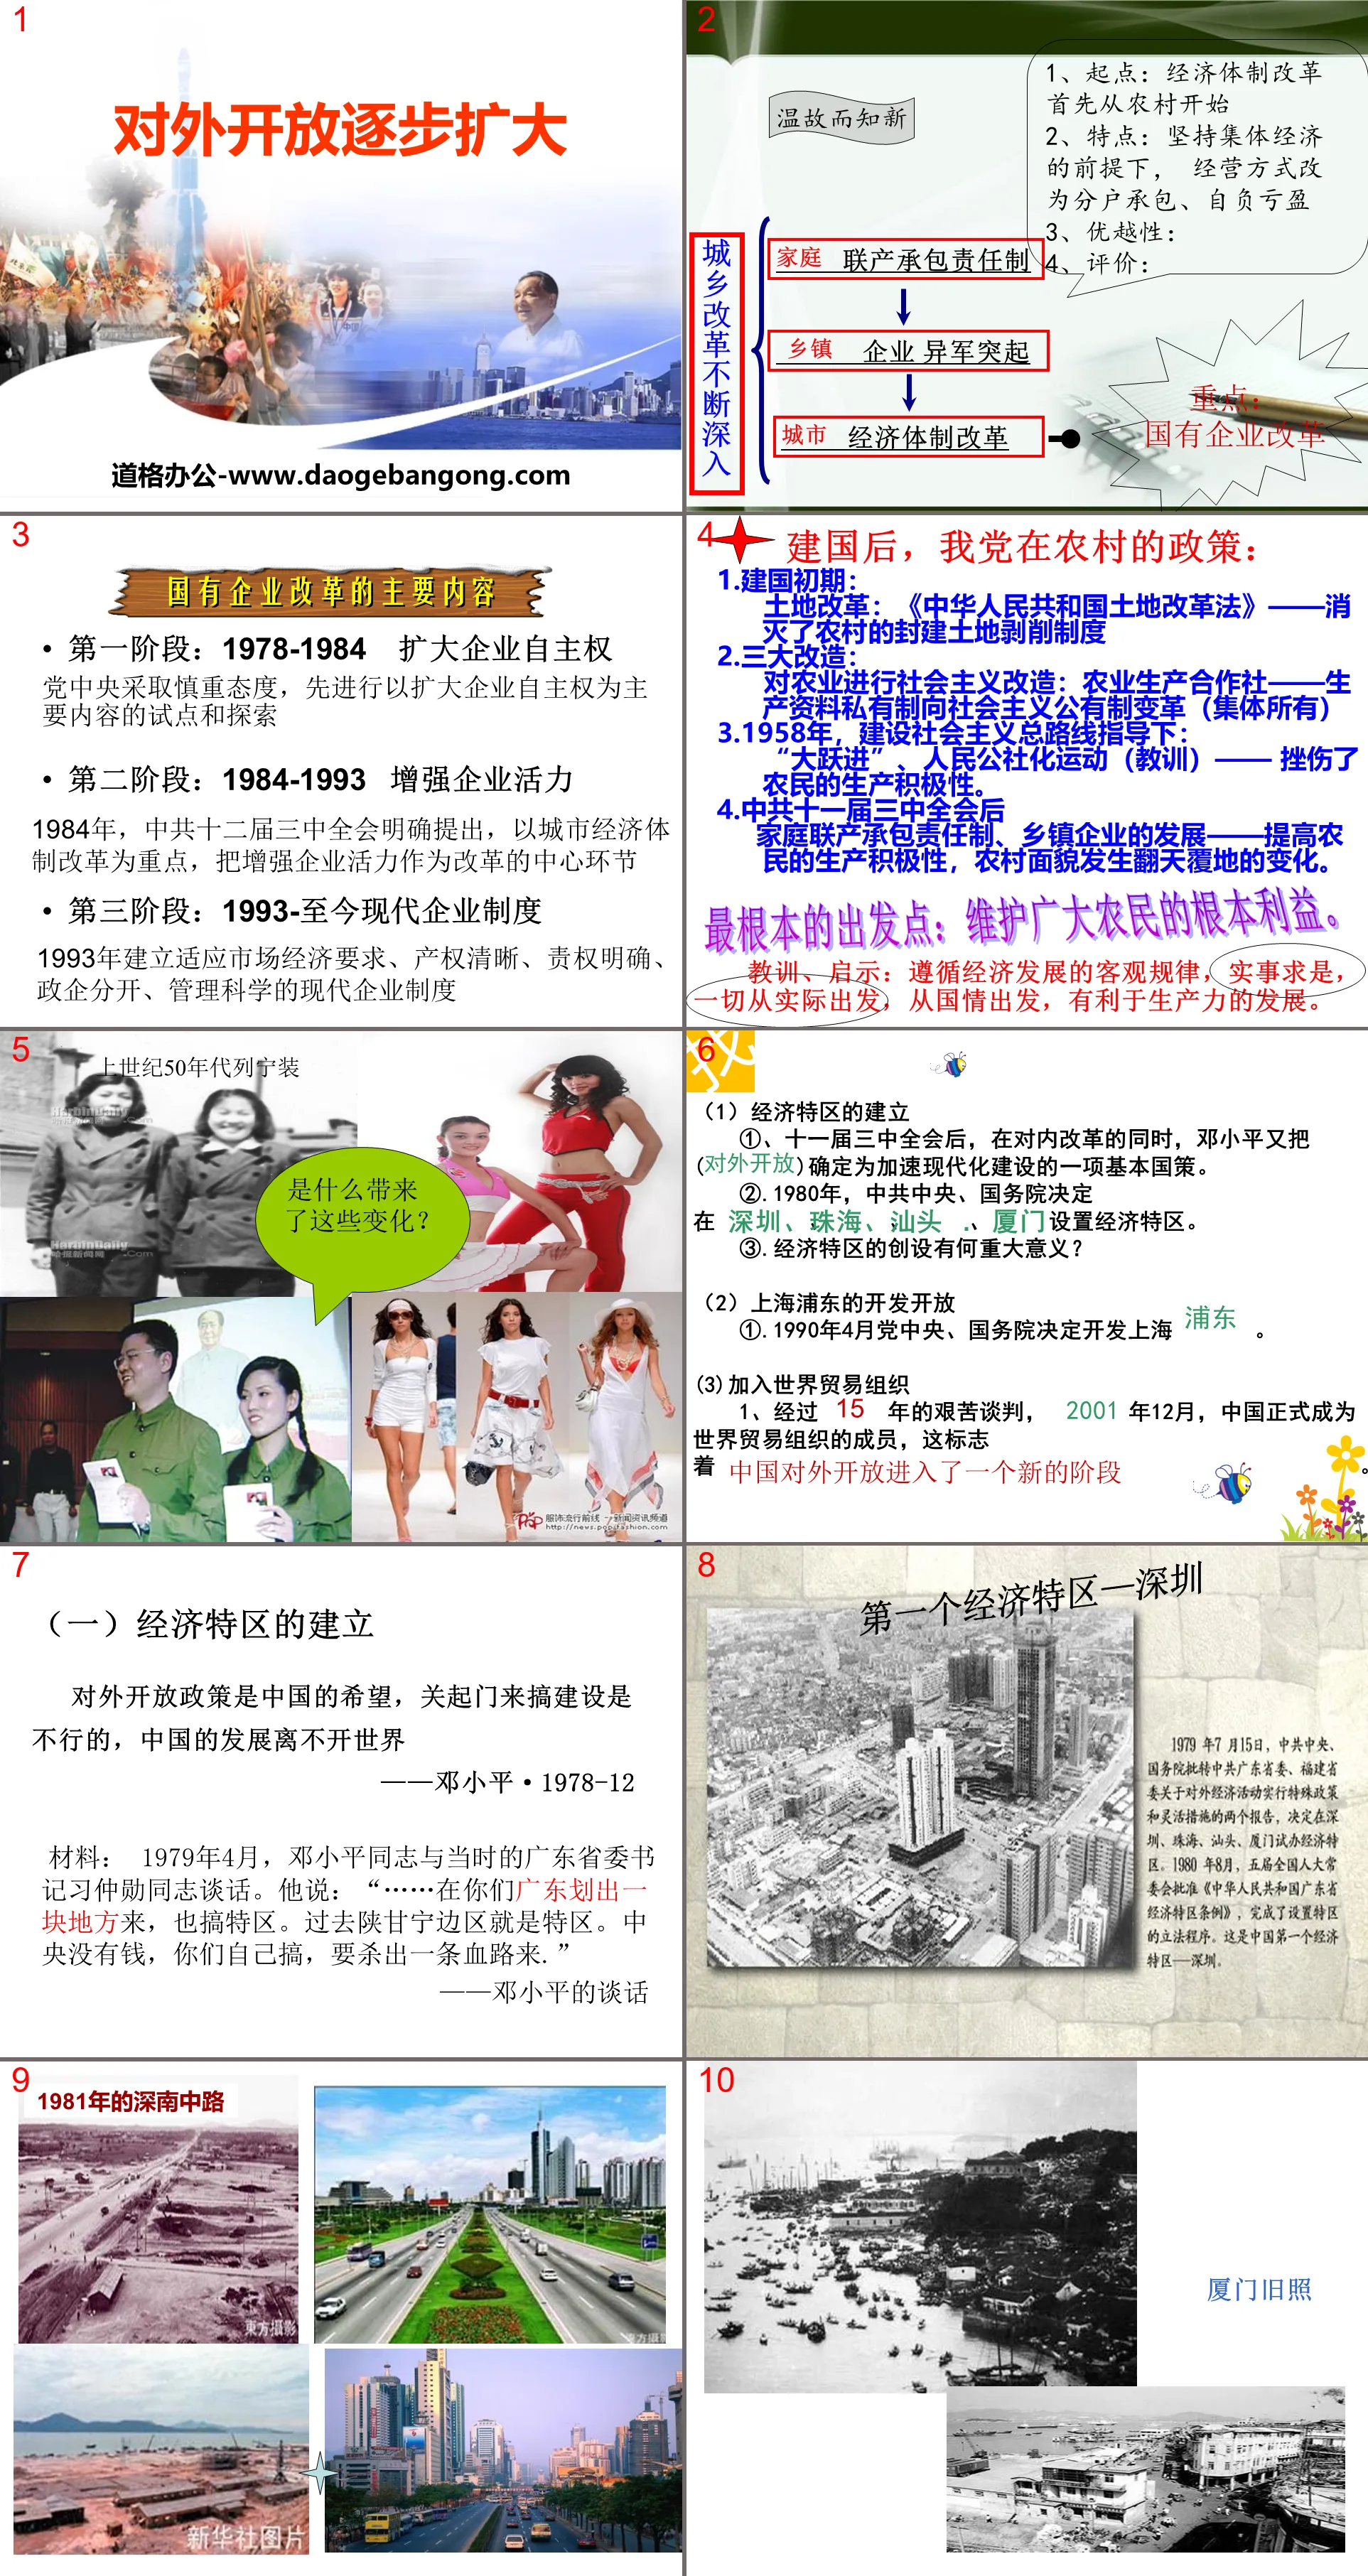 《对外开放逐步扩大》建设中国特色的社会主义PPT课件
